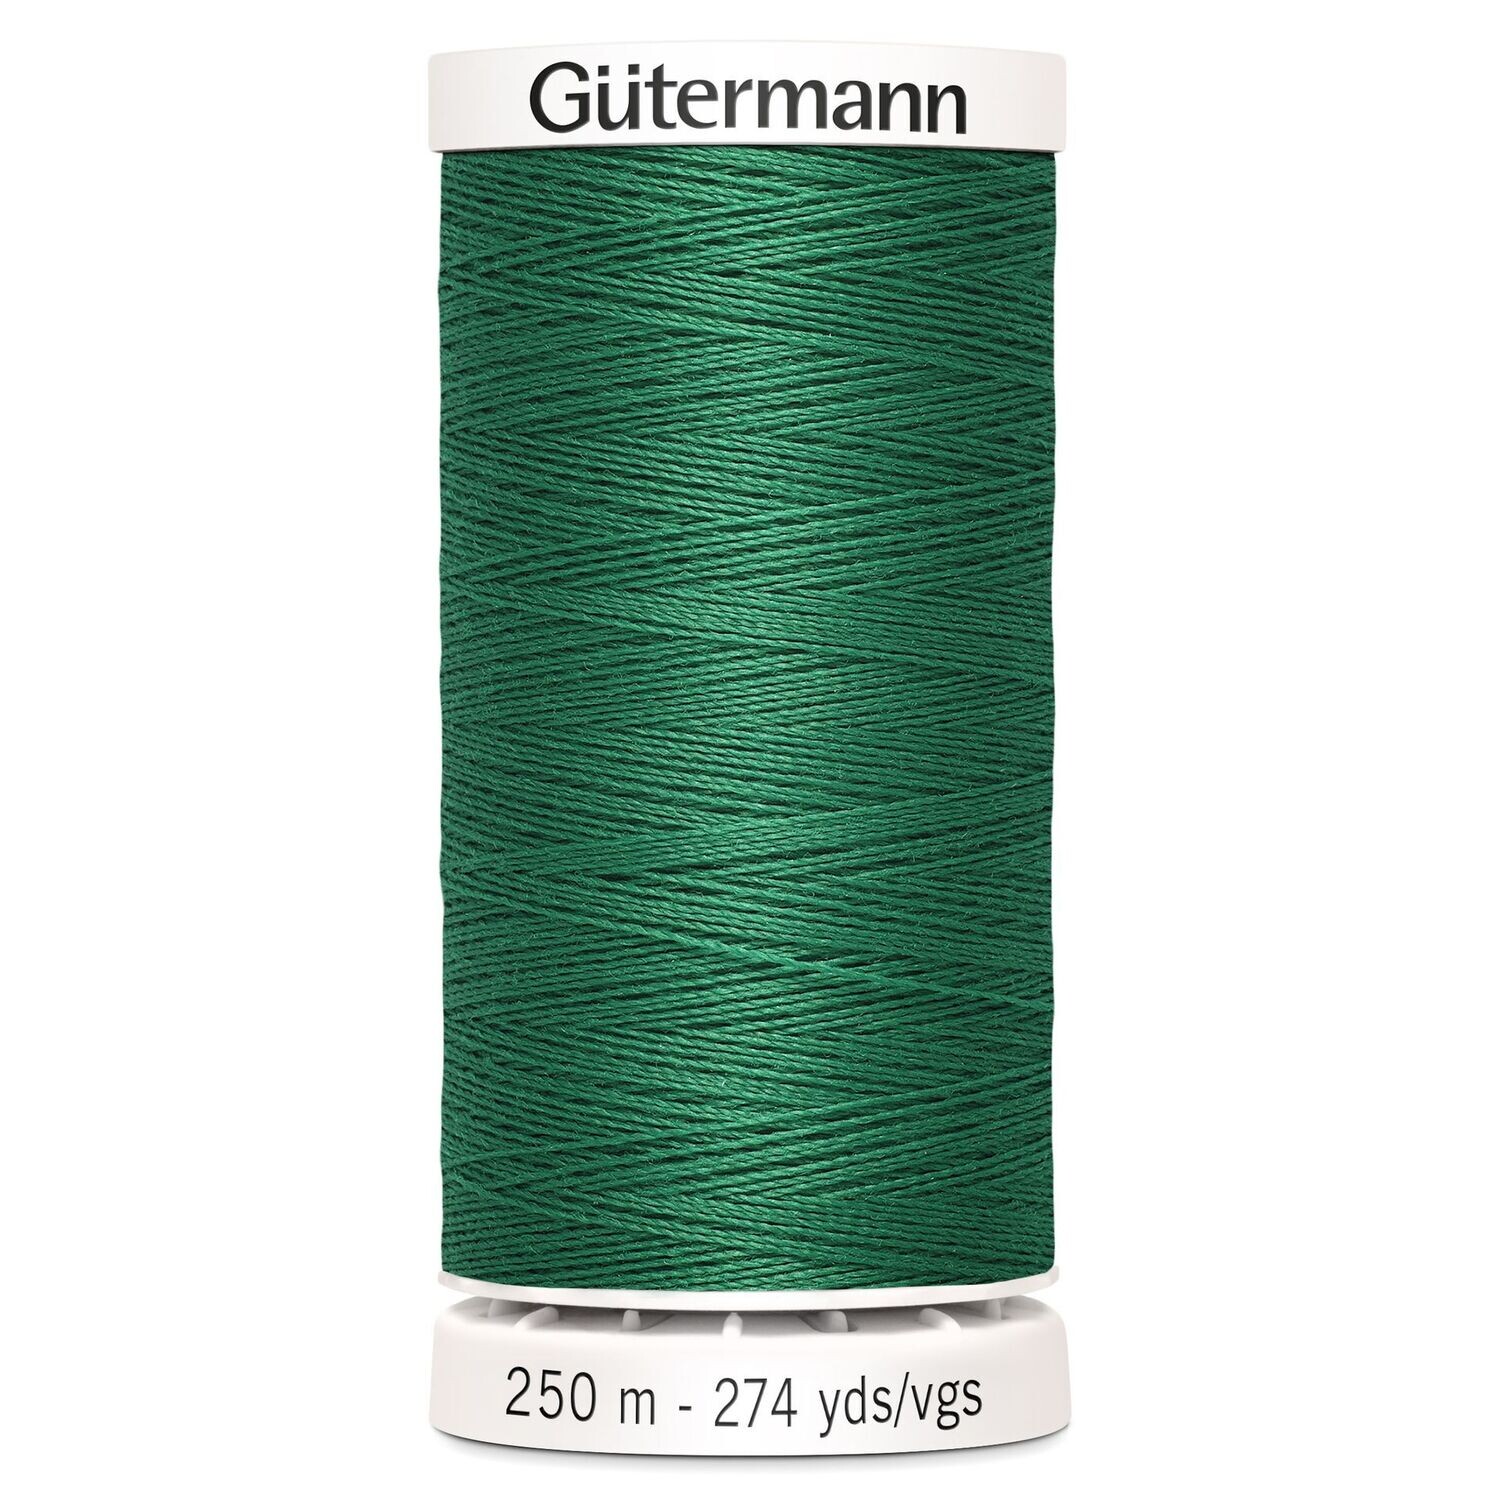 Sew All Thread 250m - Gutermann - Colour 402